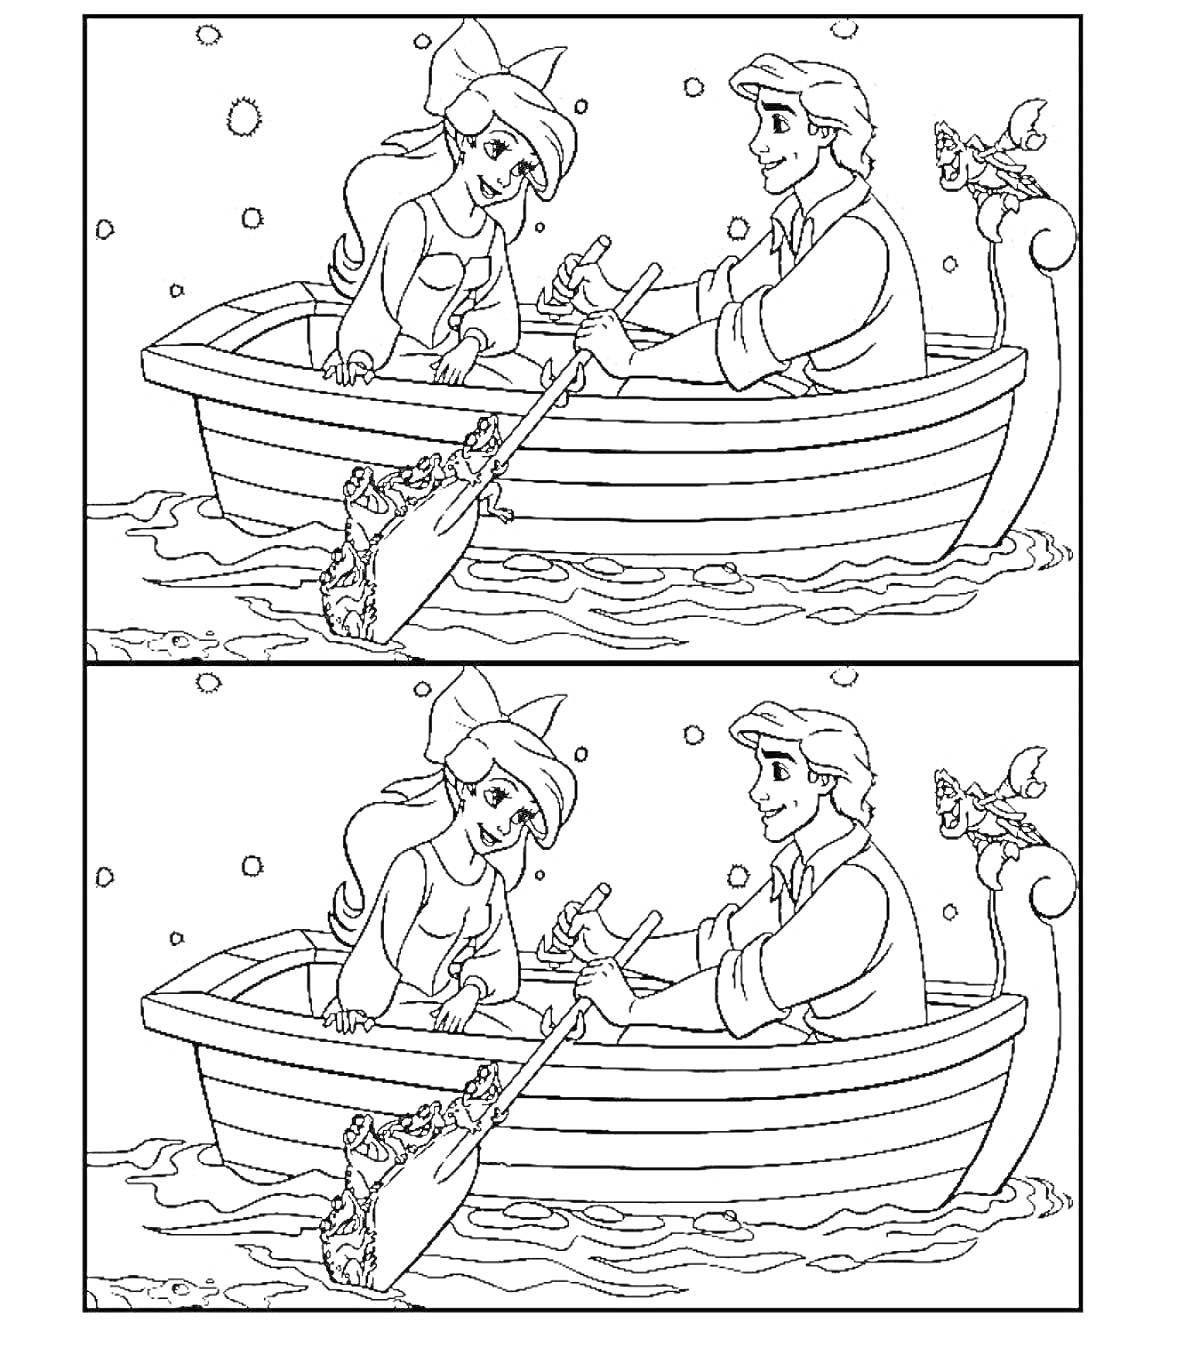 Раскраска Раскраска - Найди отличия. Русалочка и юноша в лодке, сидят напротив друг друга, держат руки, плывут по воде, на носу лодки рулевая колонка с птицей, весло справа в воде. Две картинки для поиска отличий.